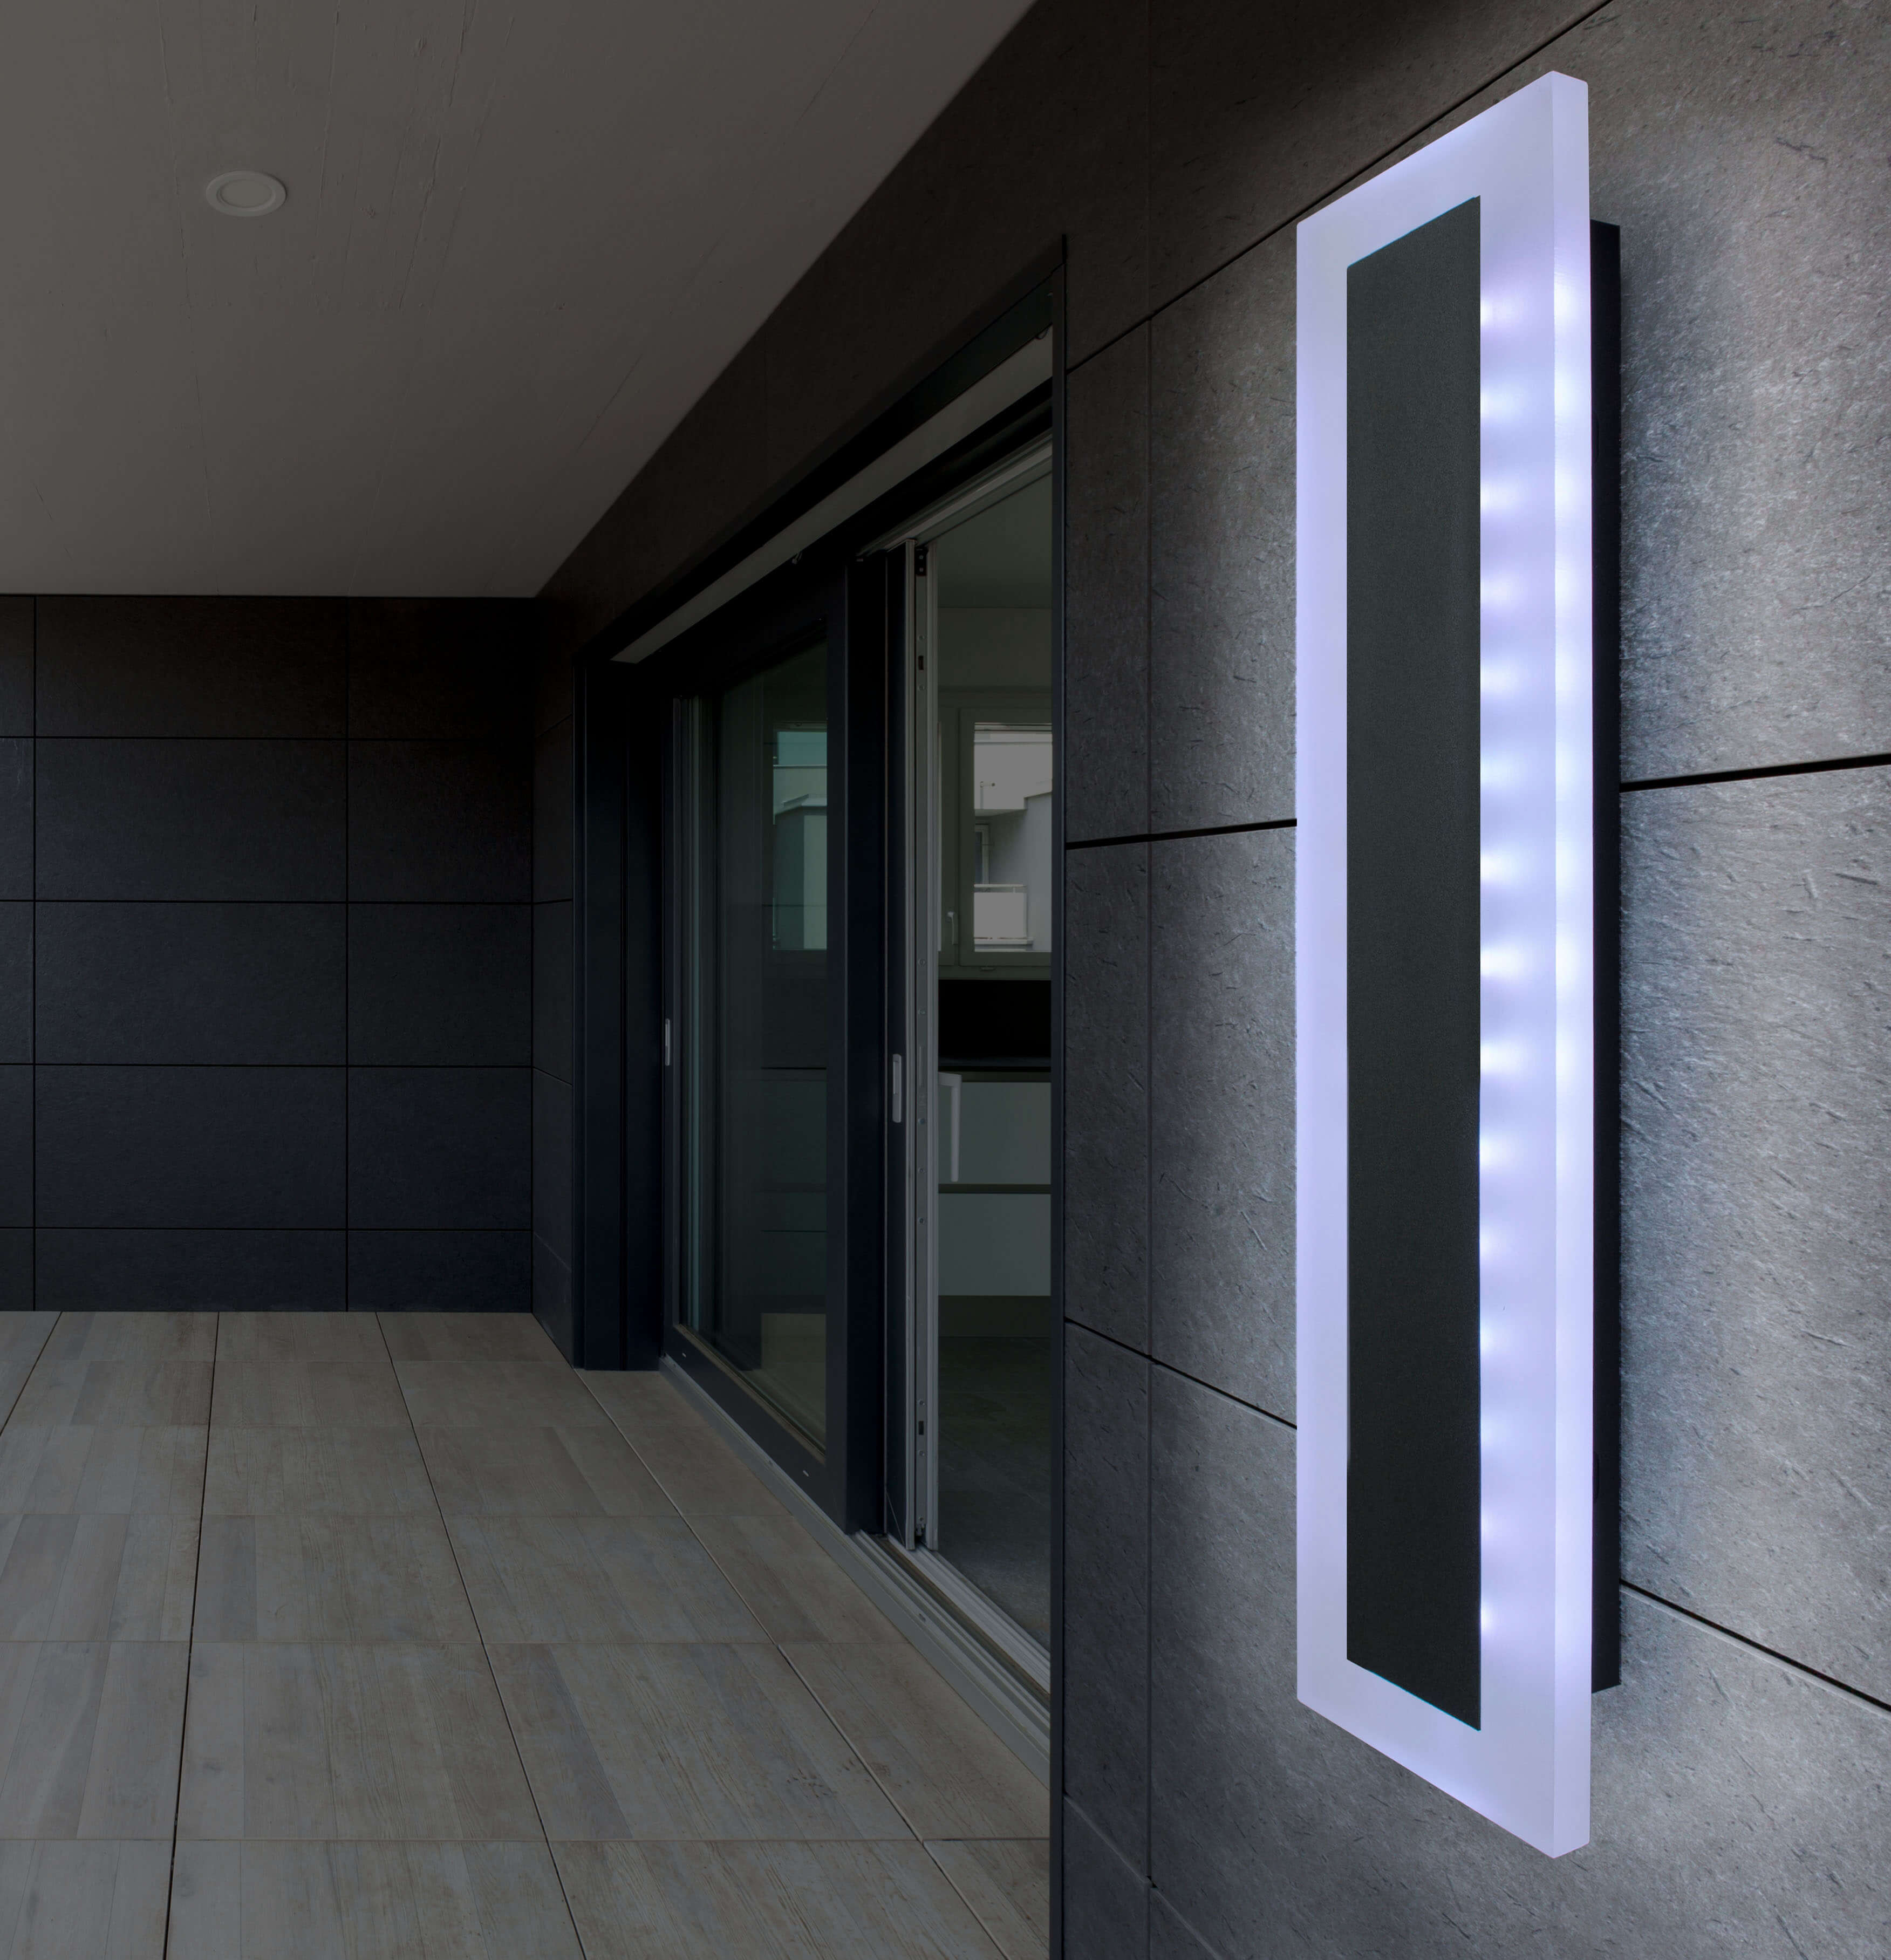 X4-LIFE LED Panel Wandleuchte 30cm 10W RGB Kaltweiß für Innen und Außen IP65 Fernbedienung